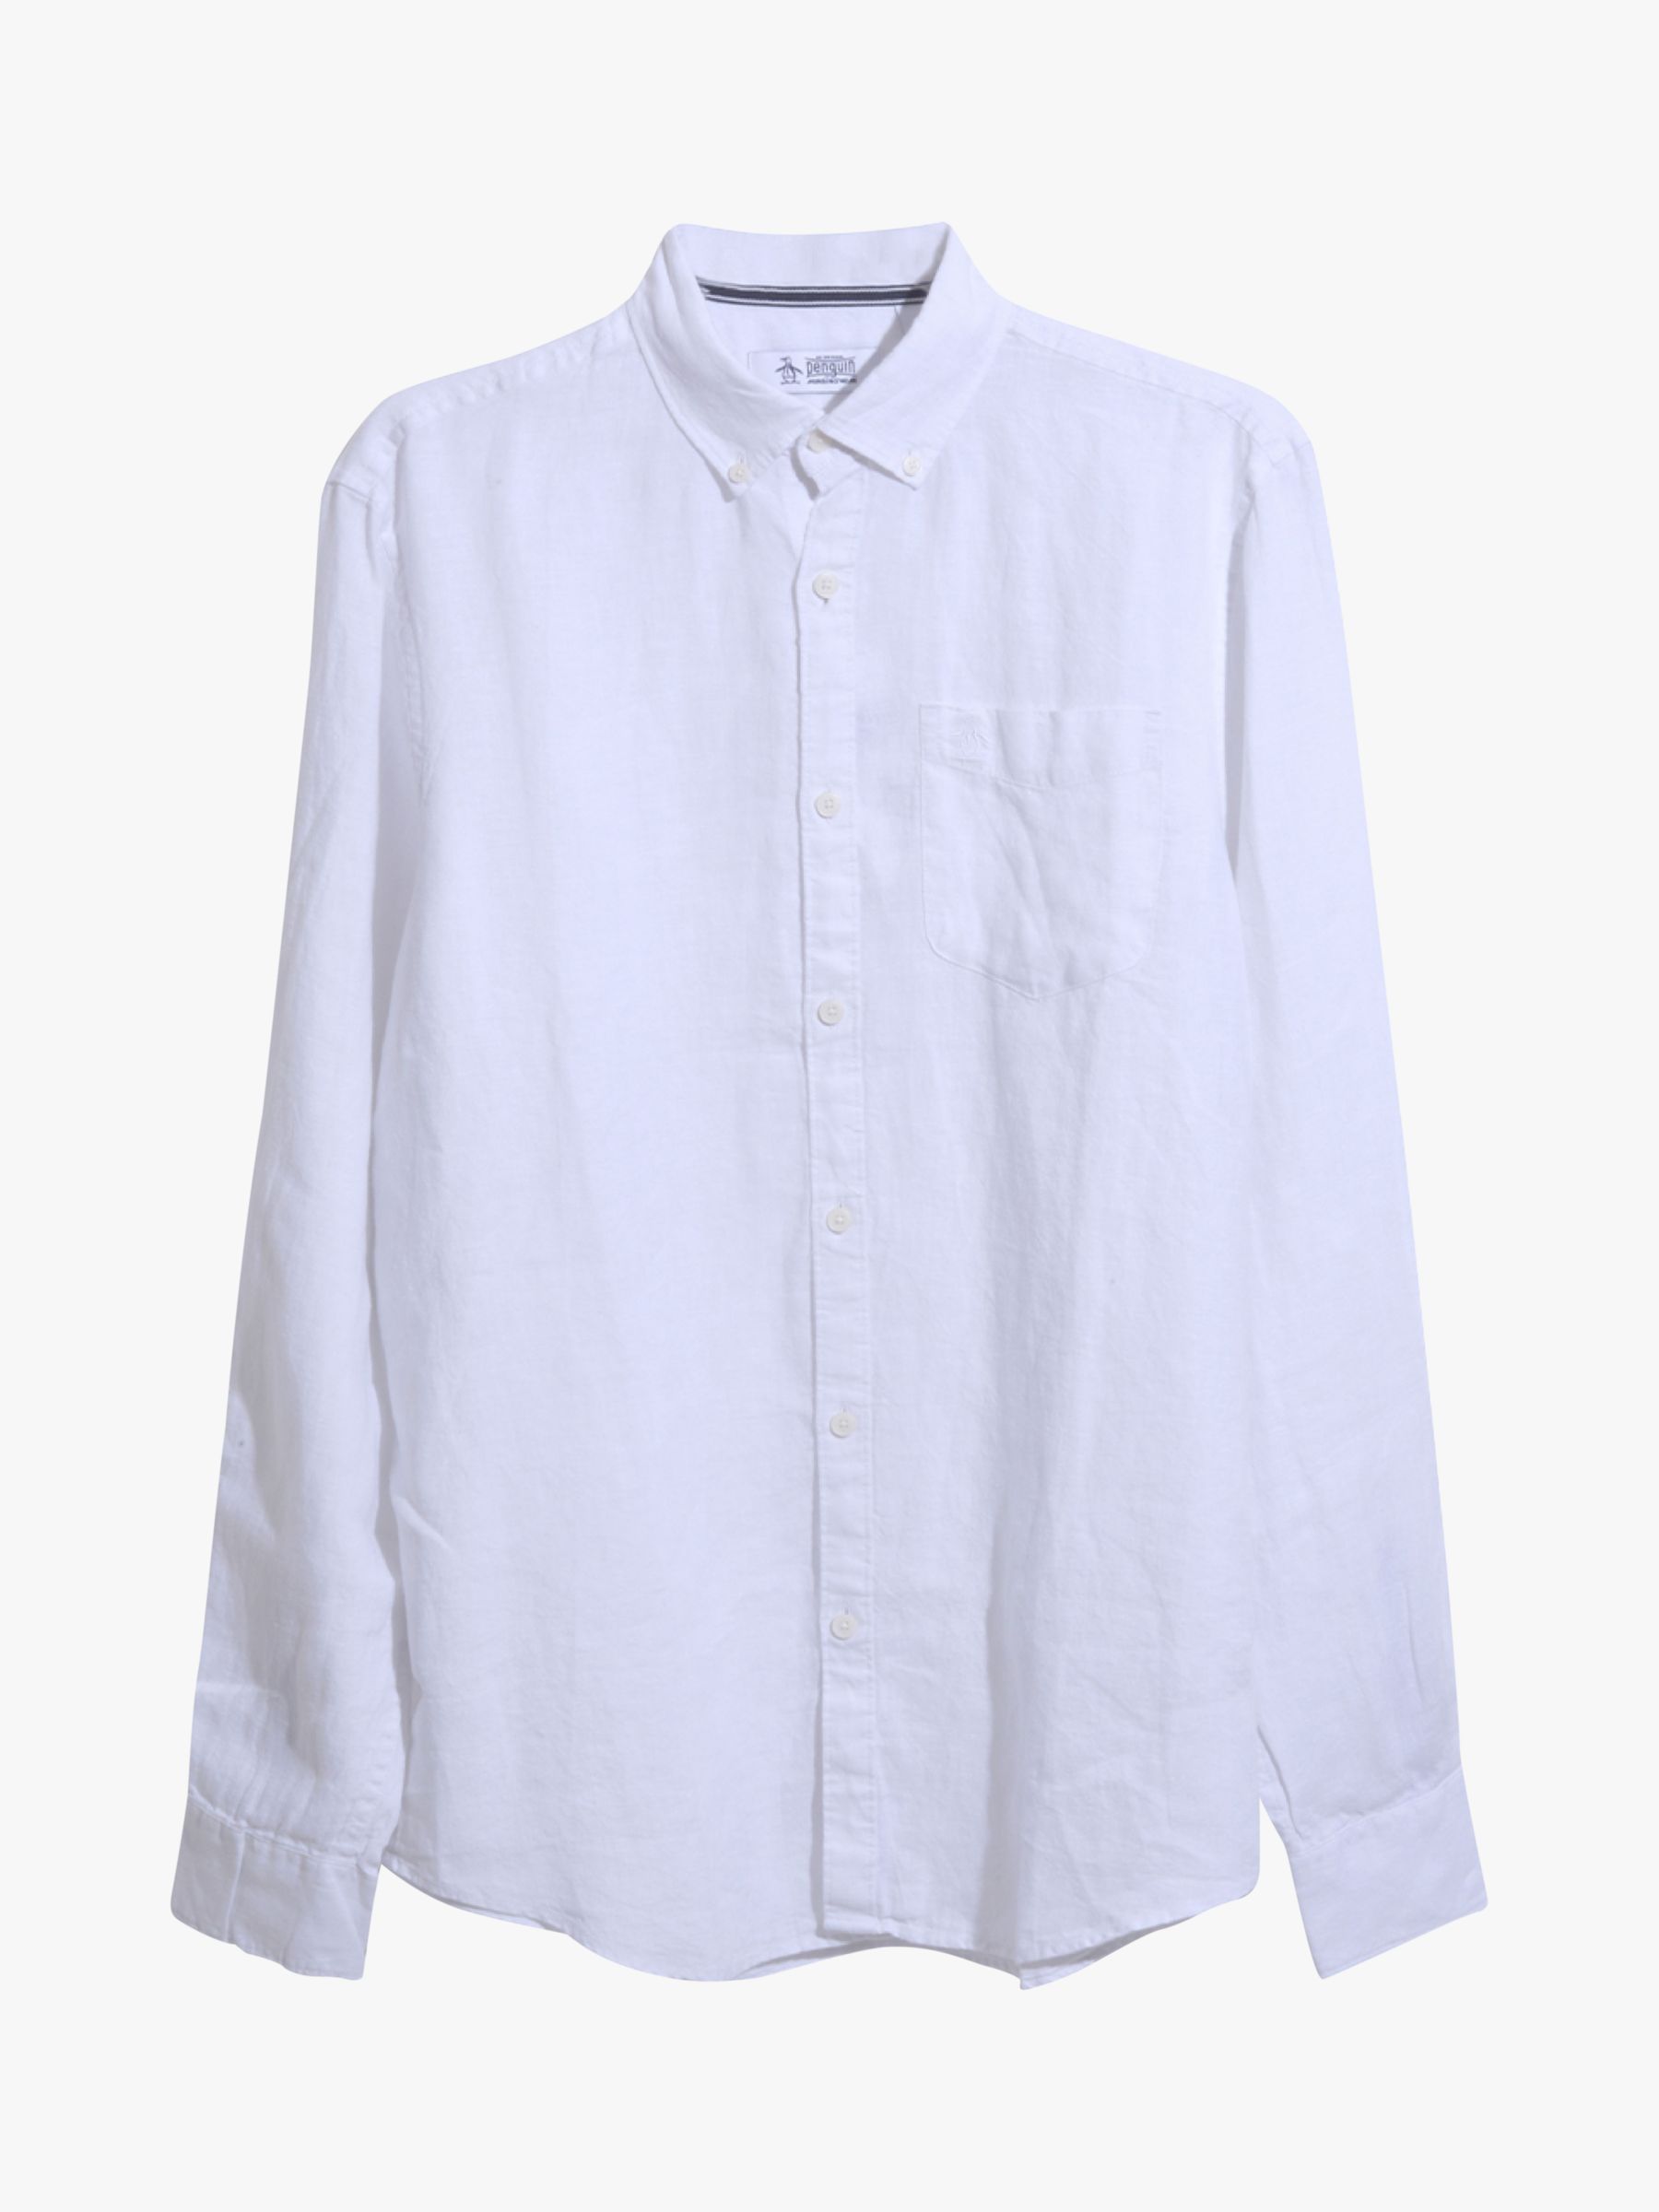 Original Penguin Long Sleeve Linen Shirt, White, L